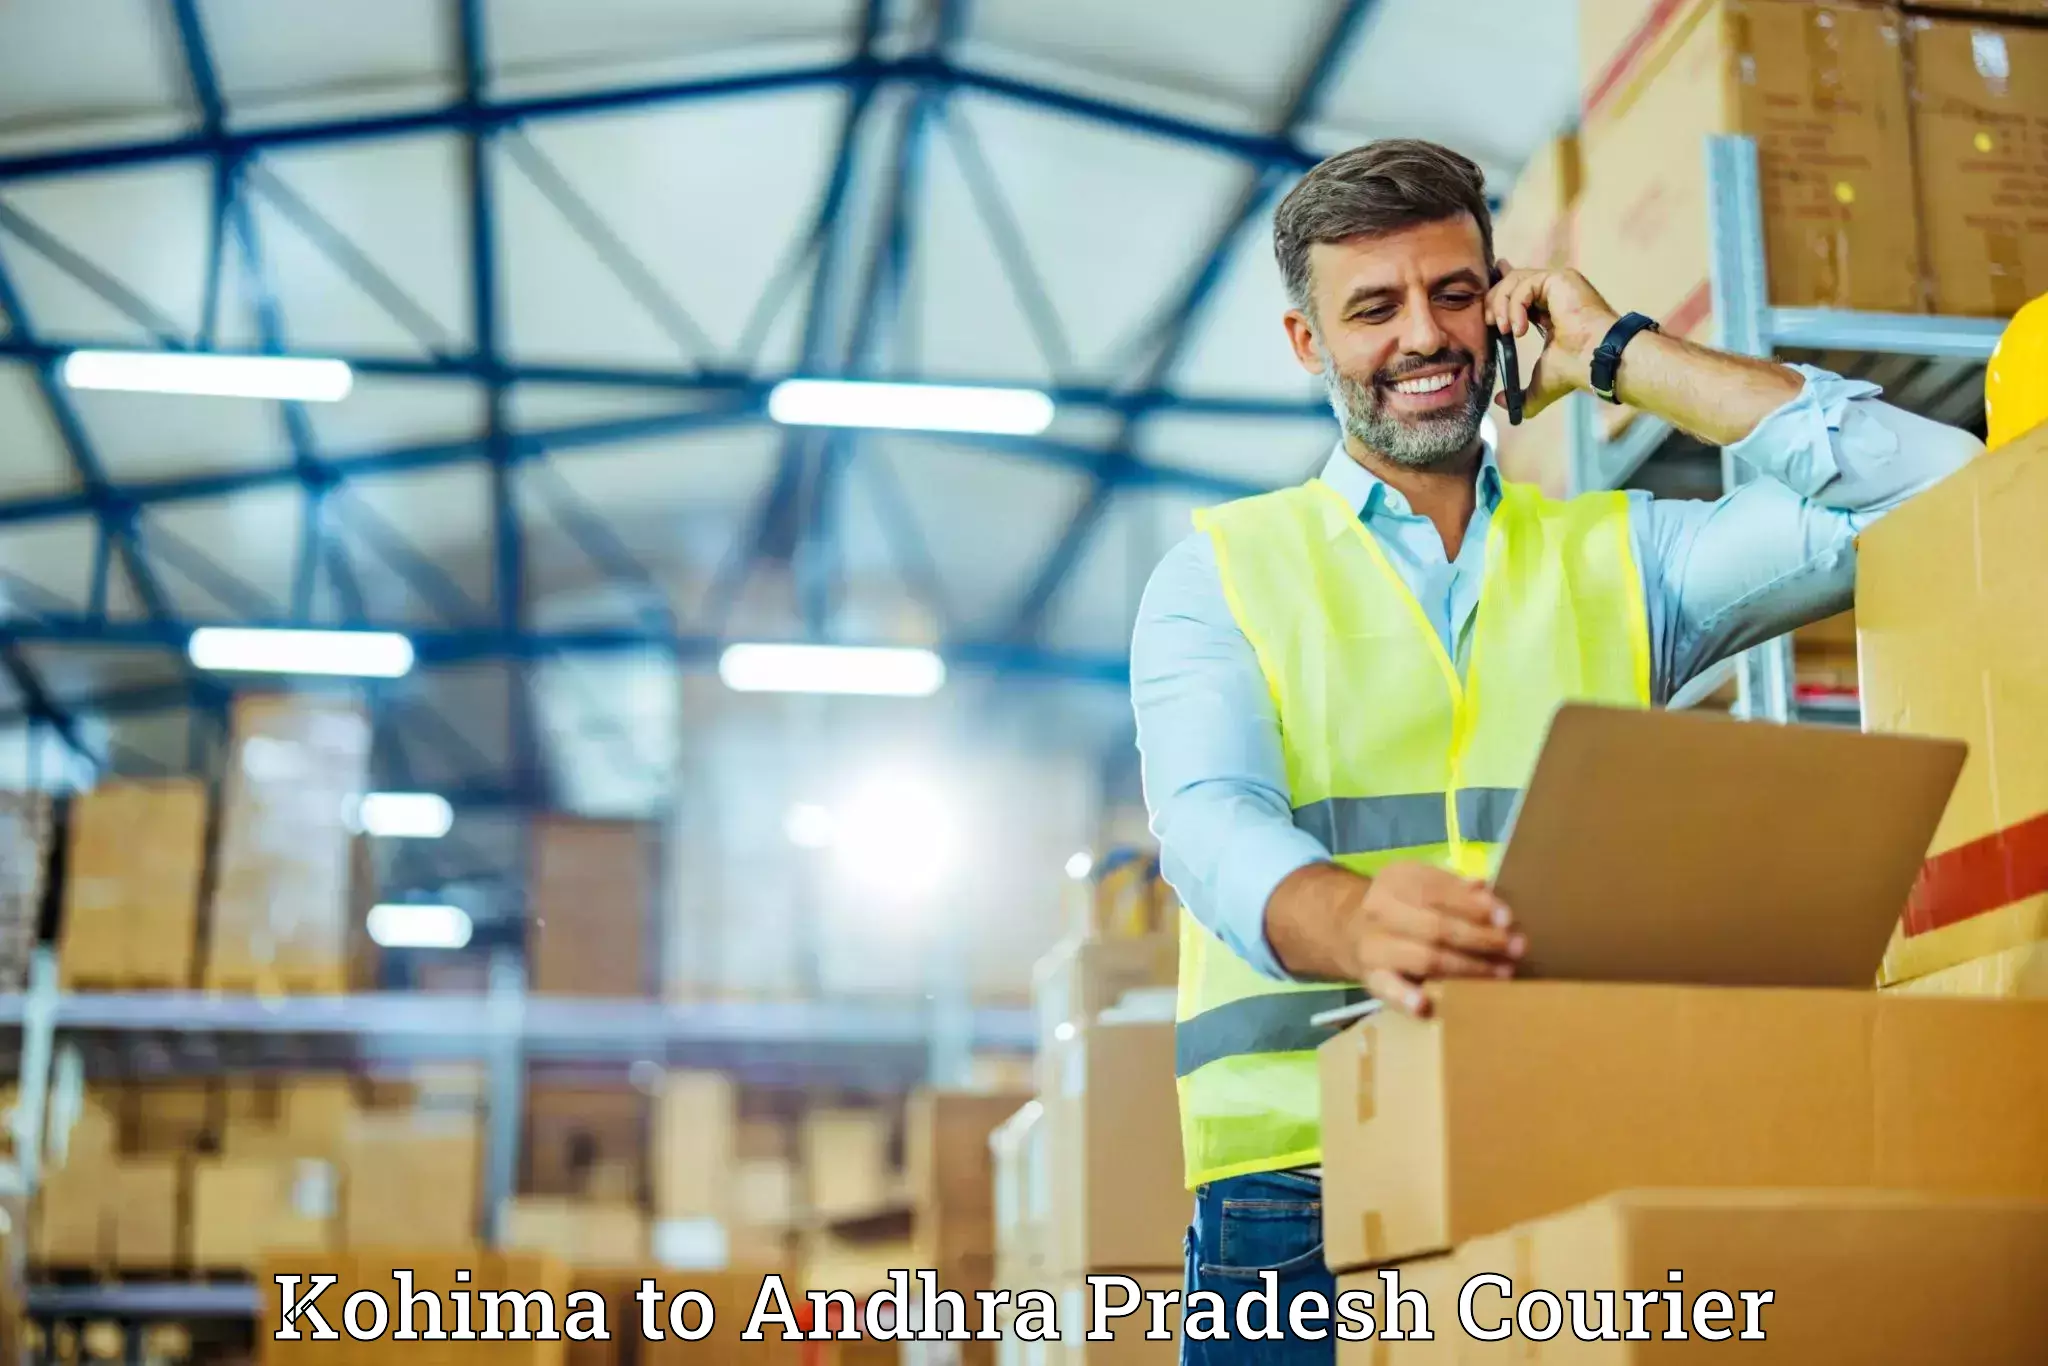 Furniture moving and handling Kohima to Andhra Pradesh